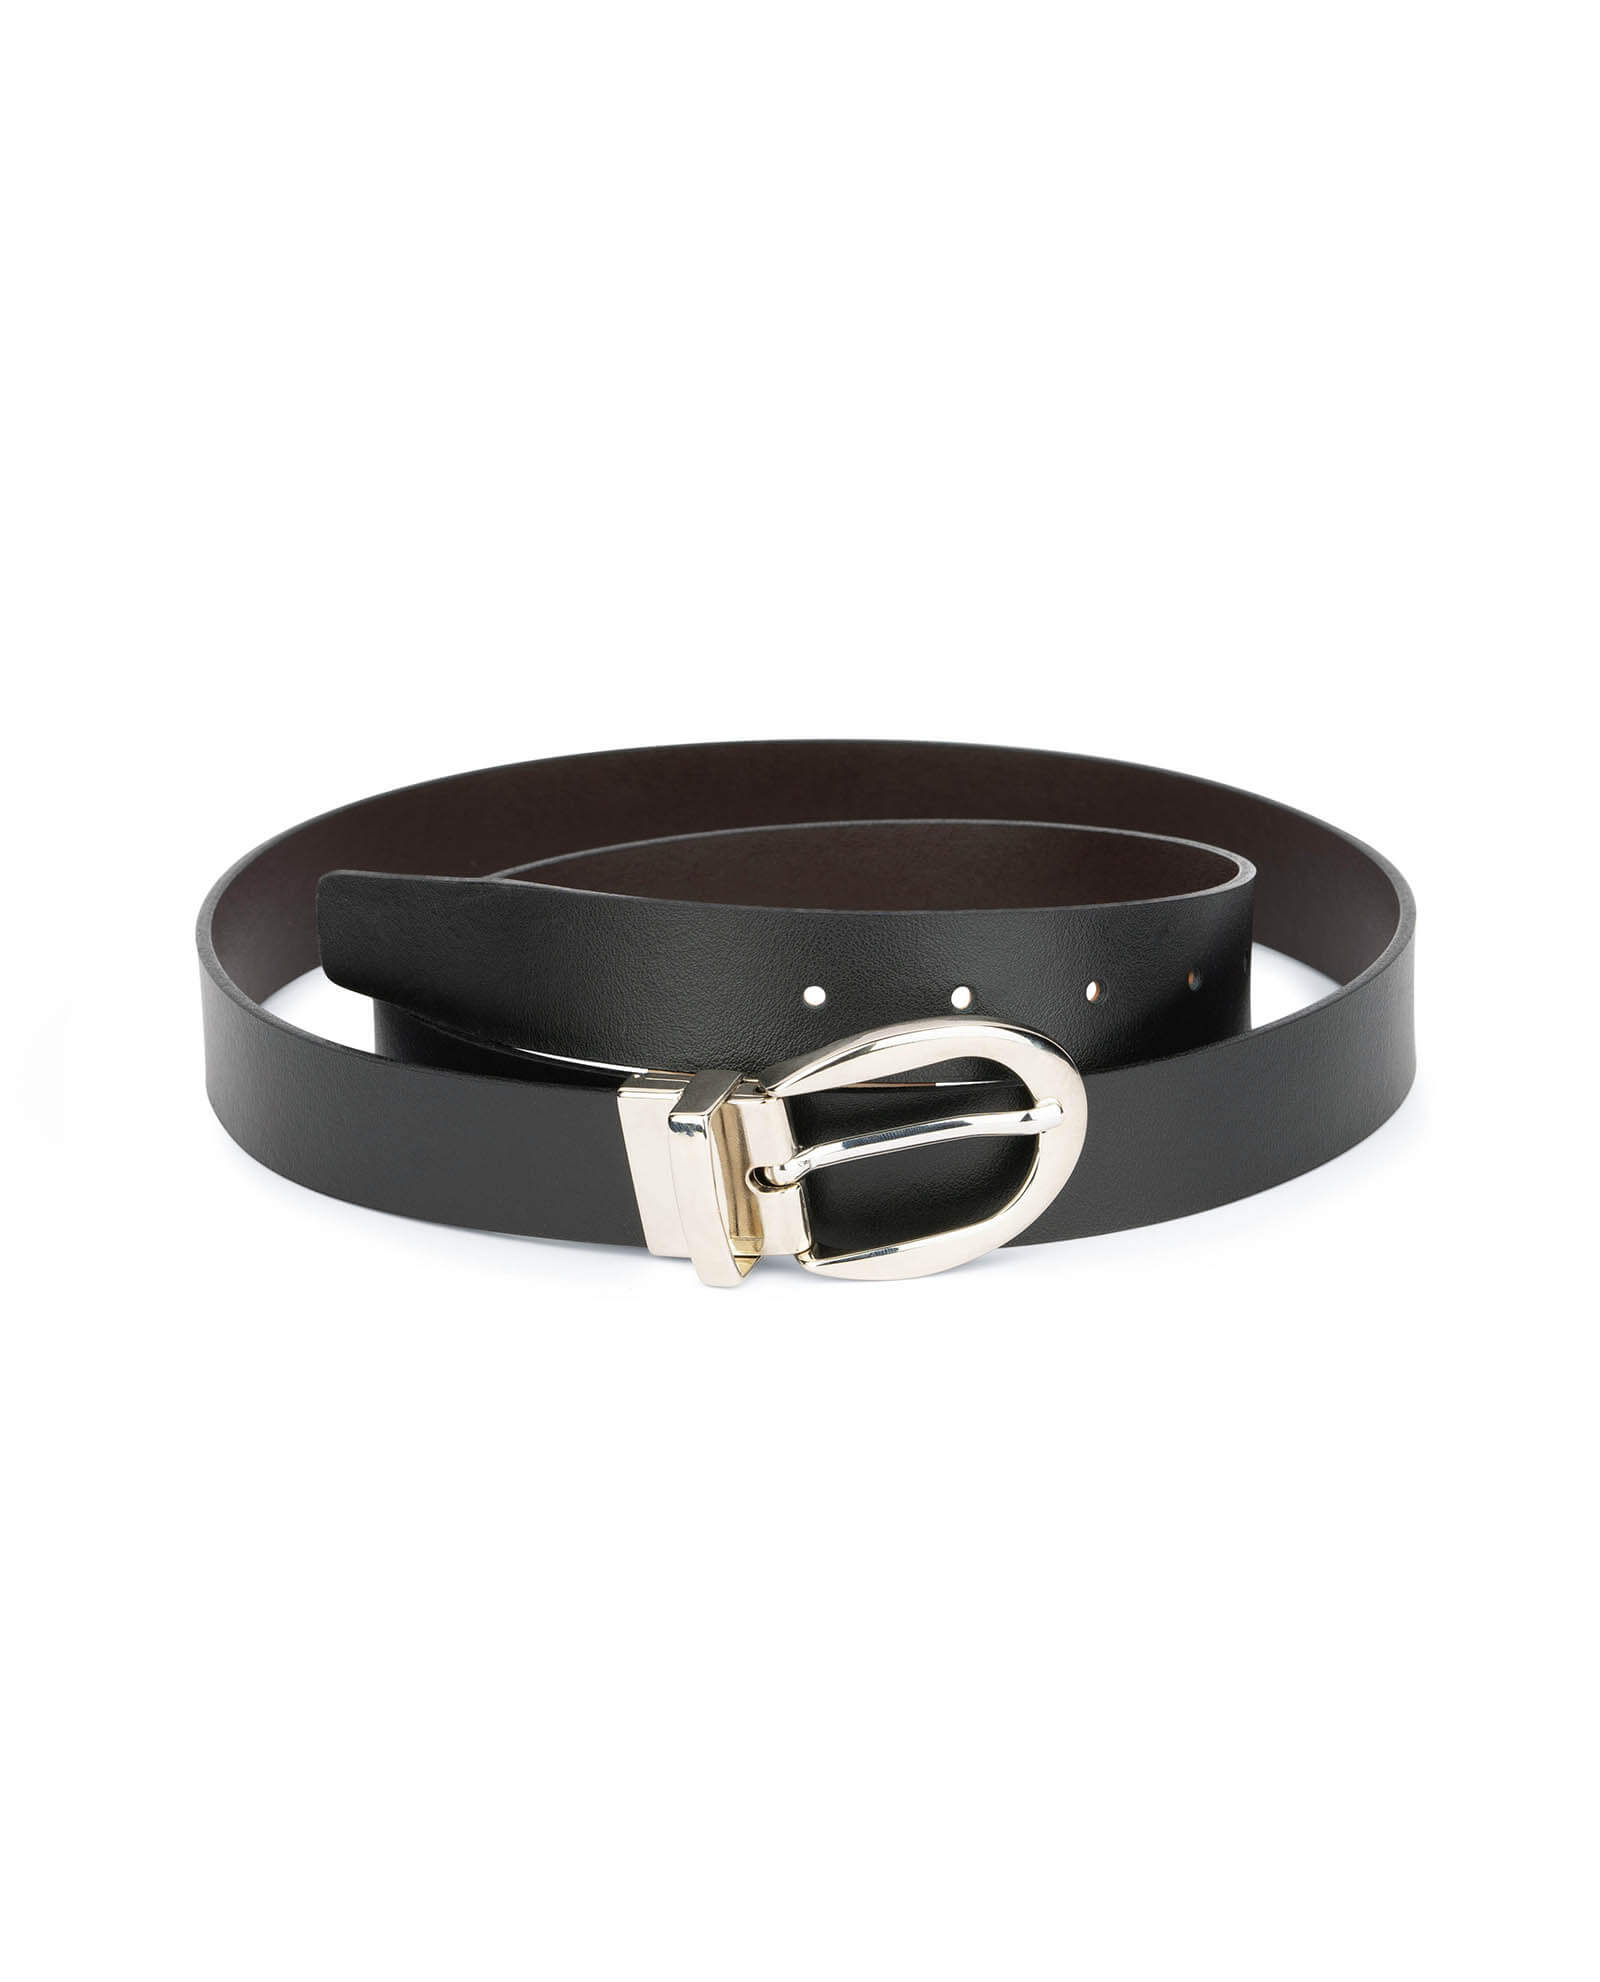 Buy Reversible Leather Belt For Women | Capo Pelle